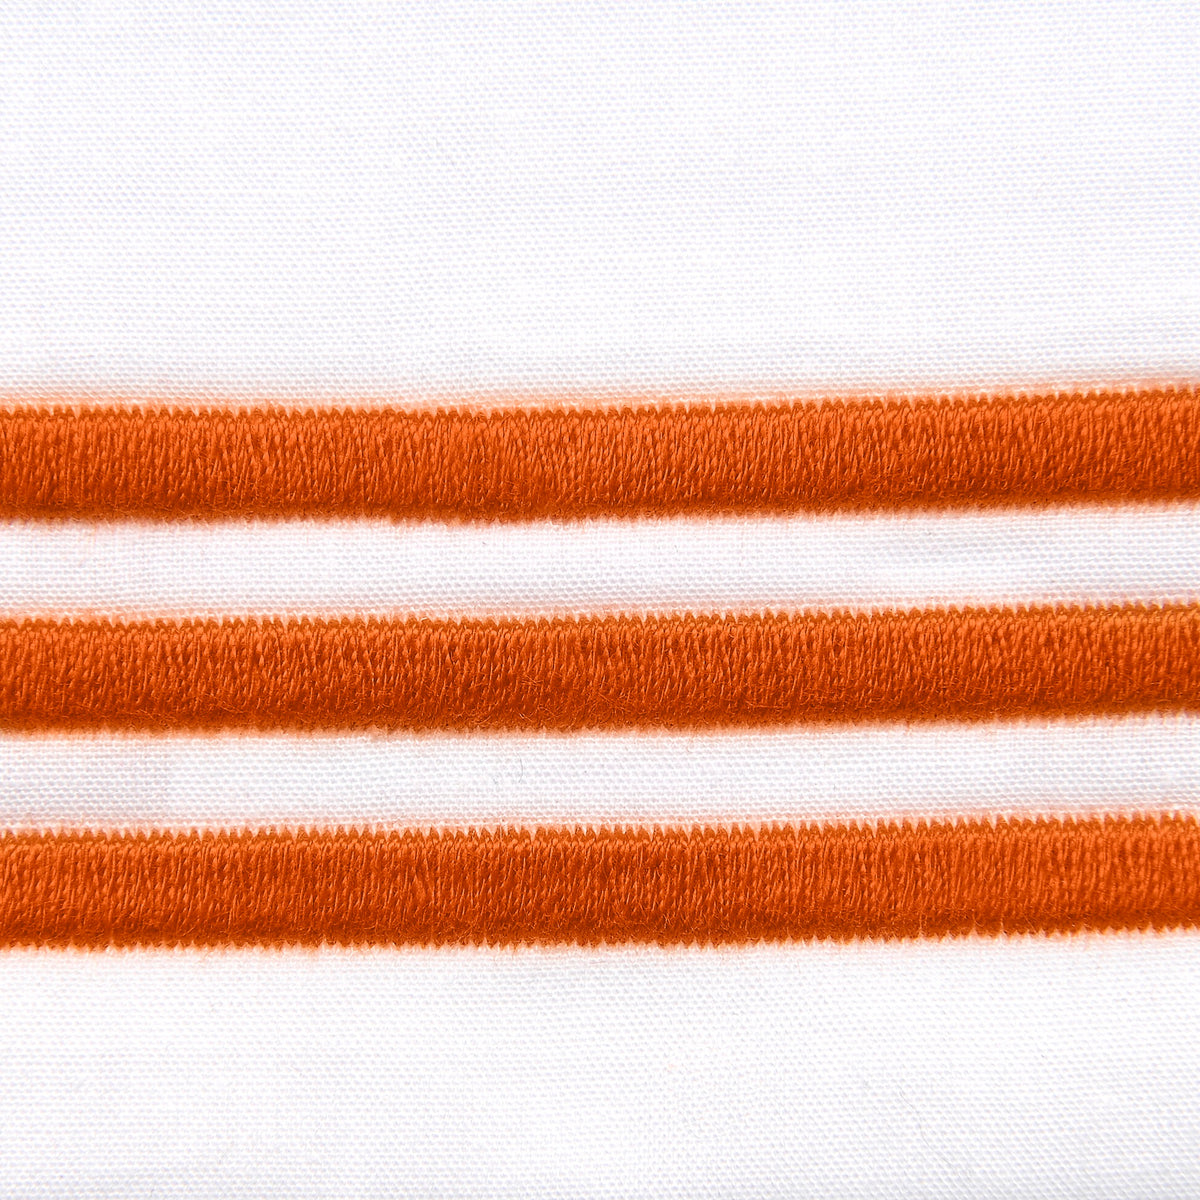 Fabric Closeup of Signoria Platinum Percale Bedding in White/Rust Color